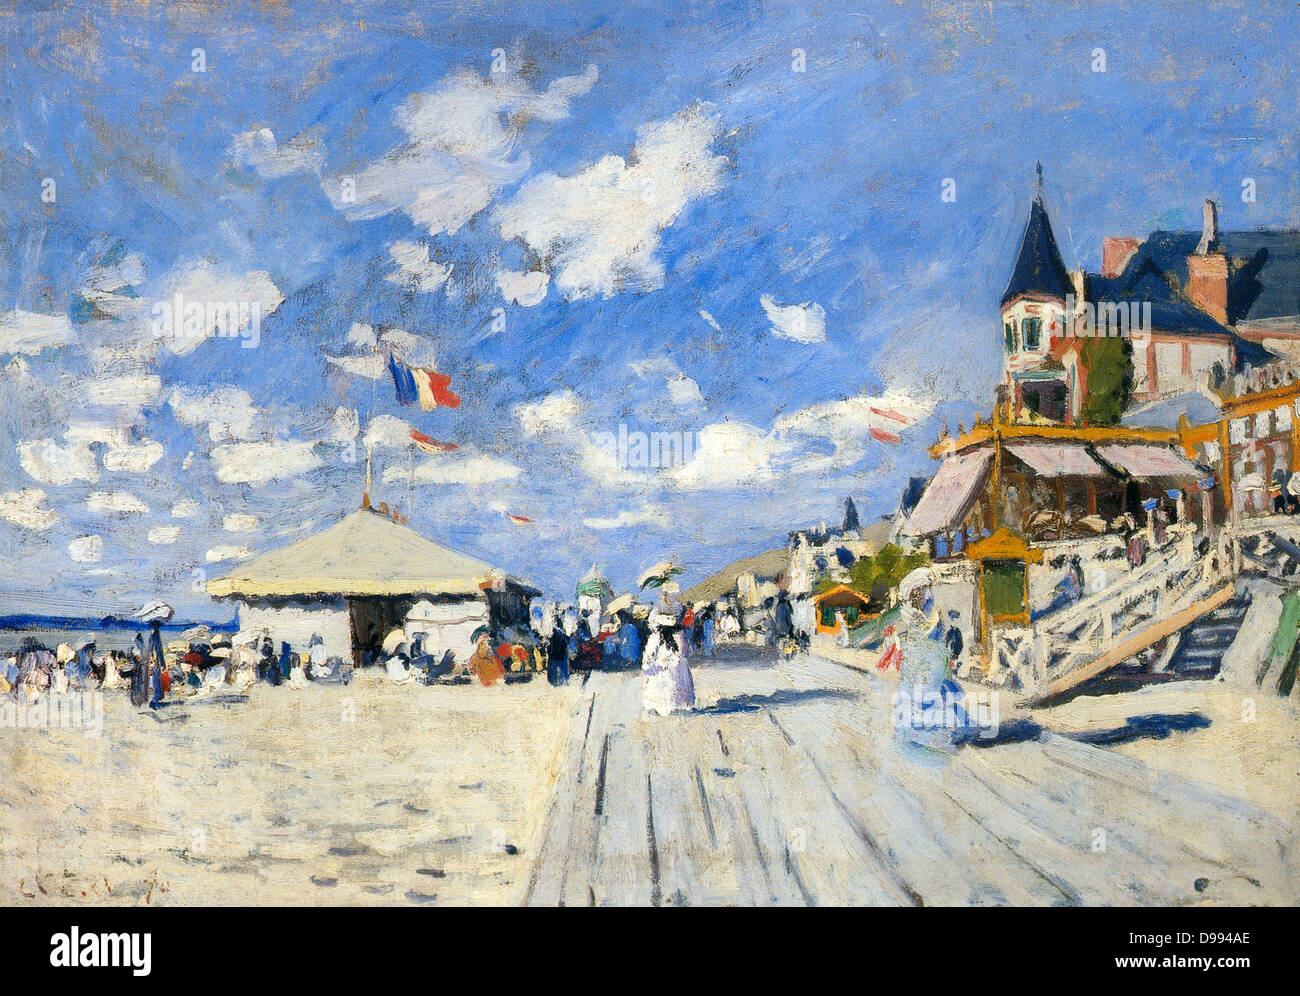 Claude Monet (14. November 1840 - vom 5. Dezember 1926) Französische Maler des Impressionismus. Der Begriff Impressionismus aus dem Titel seiner Malerei Eindruck, Sunrise (Impression, Soleil levant) abgeleitet ist. "Trouville", Öl auf Leinwand, 1870-71 Stockfoto